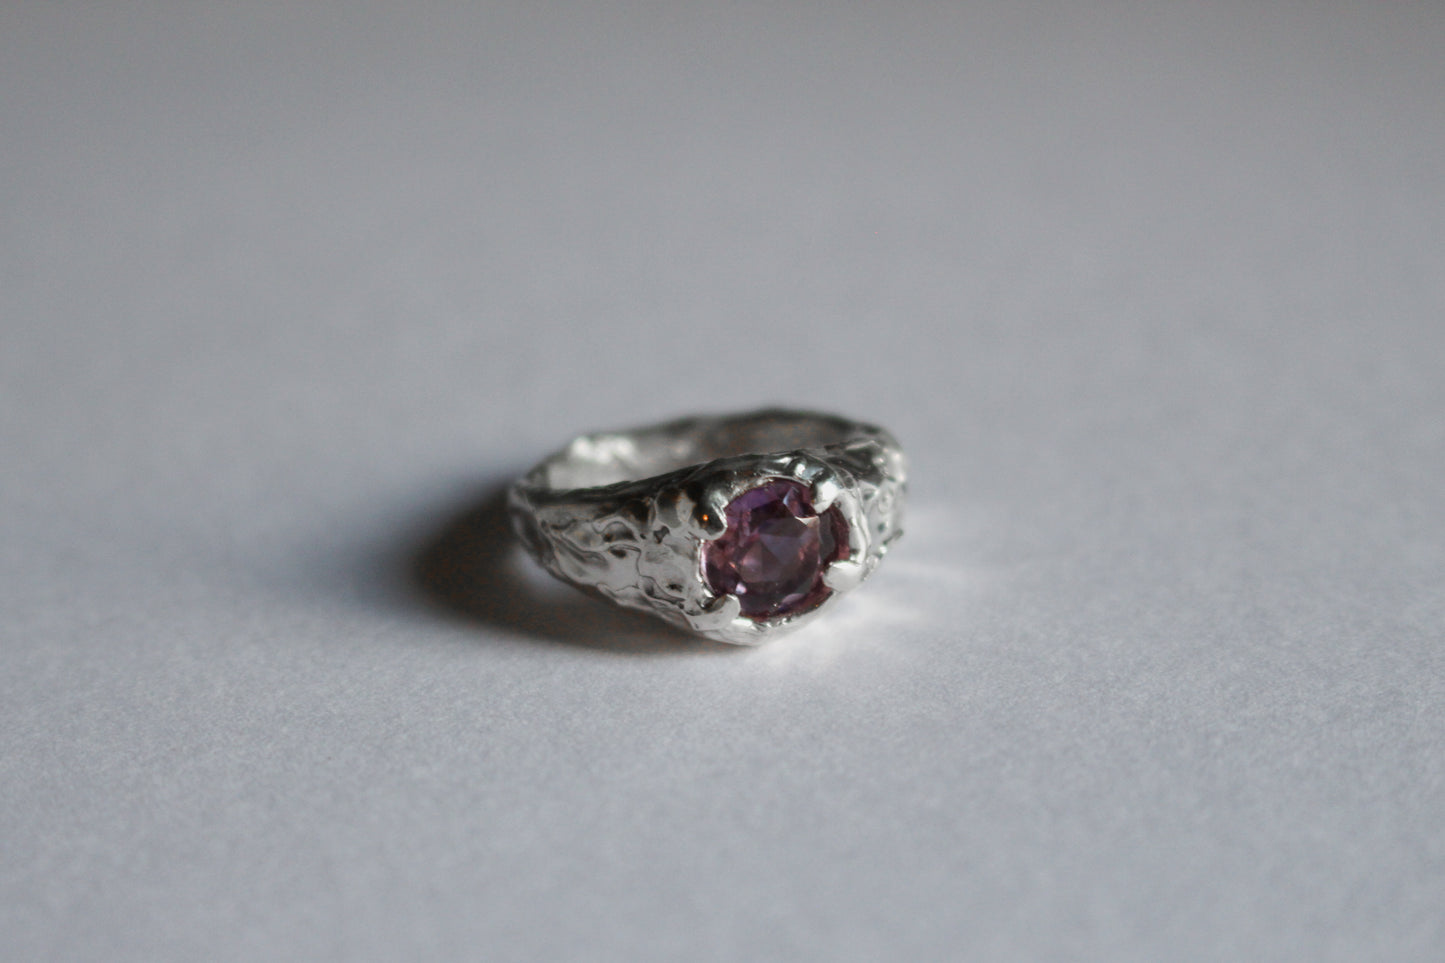 Violet Novelty - 925 sterling silver ring